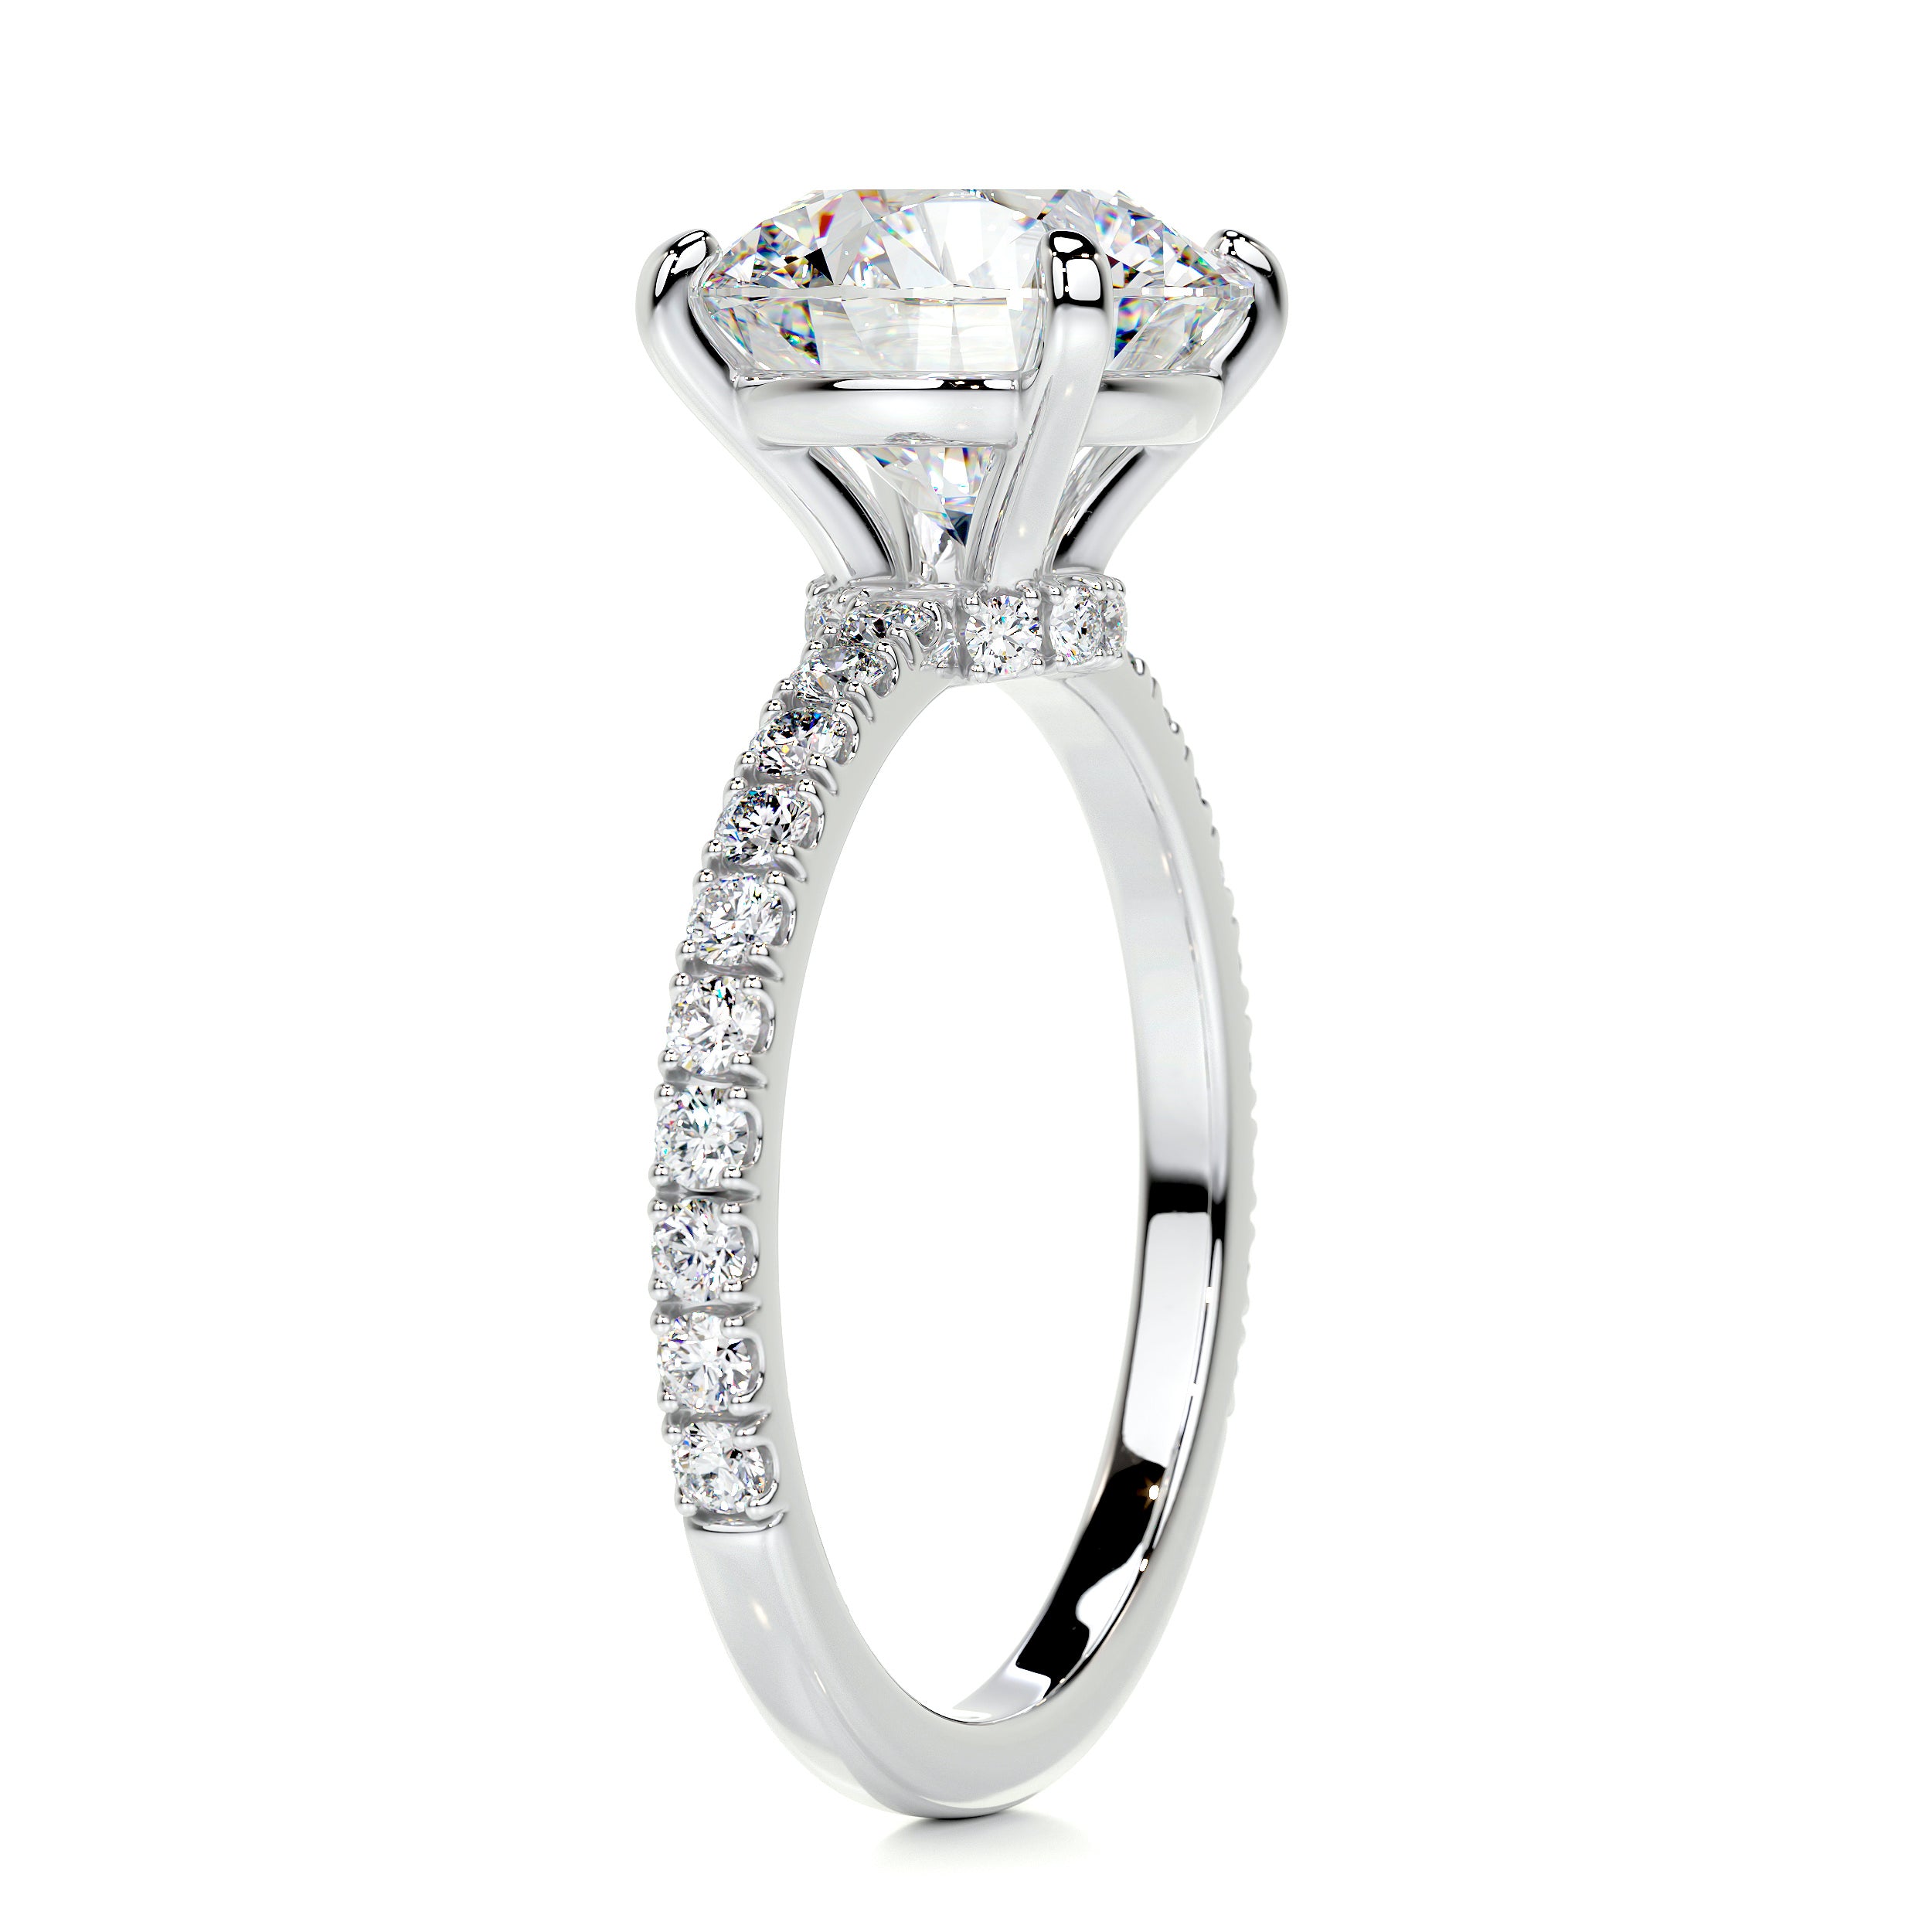 Eleanor Moissanite & Diamonds Ring   (3.5 Carat) -14K White Gold